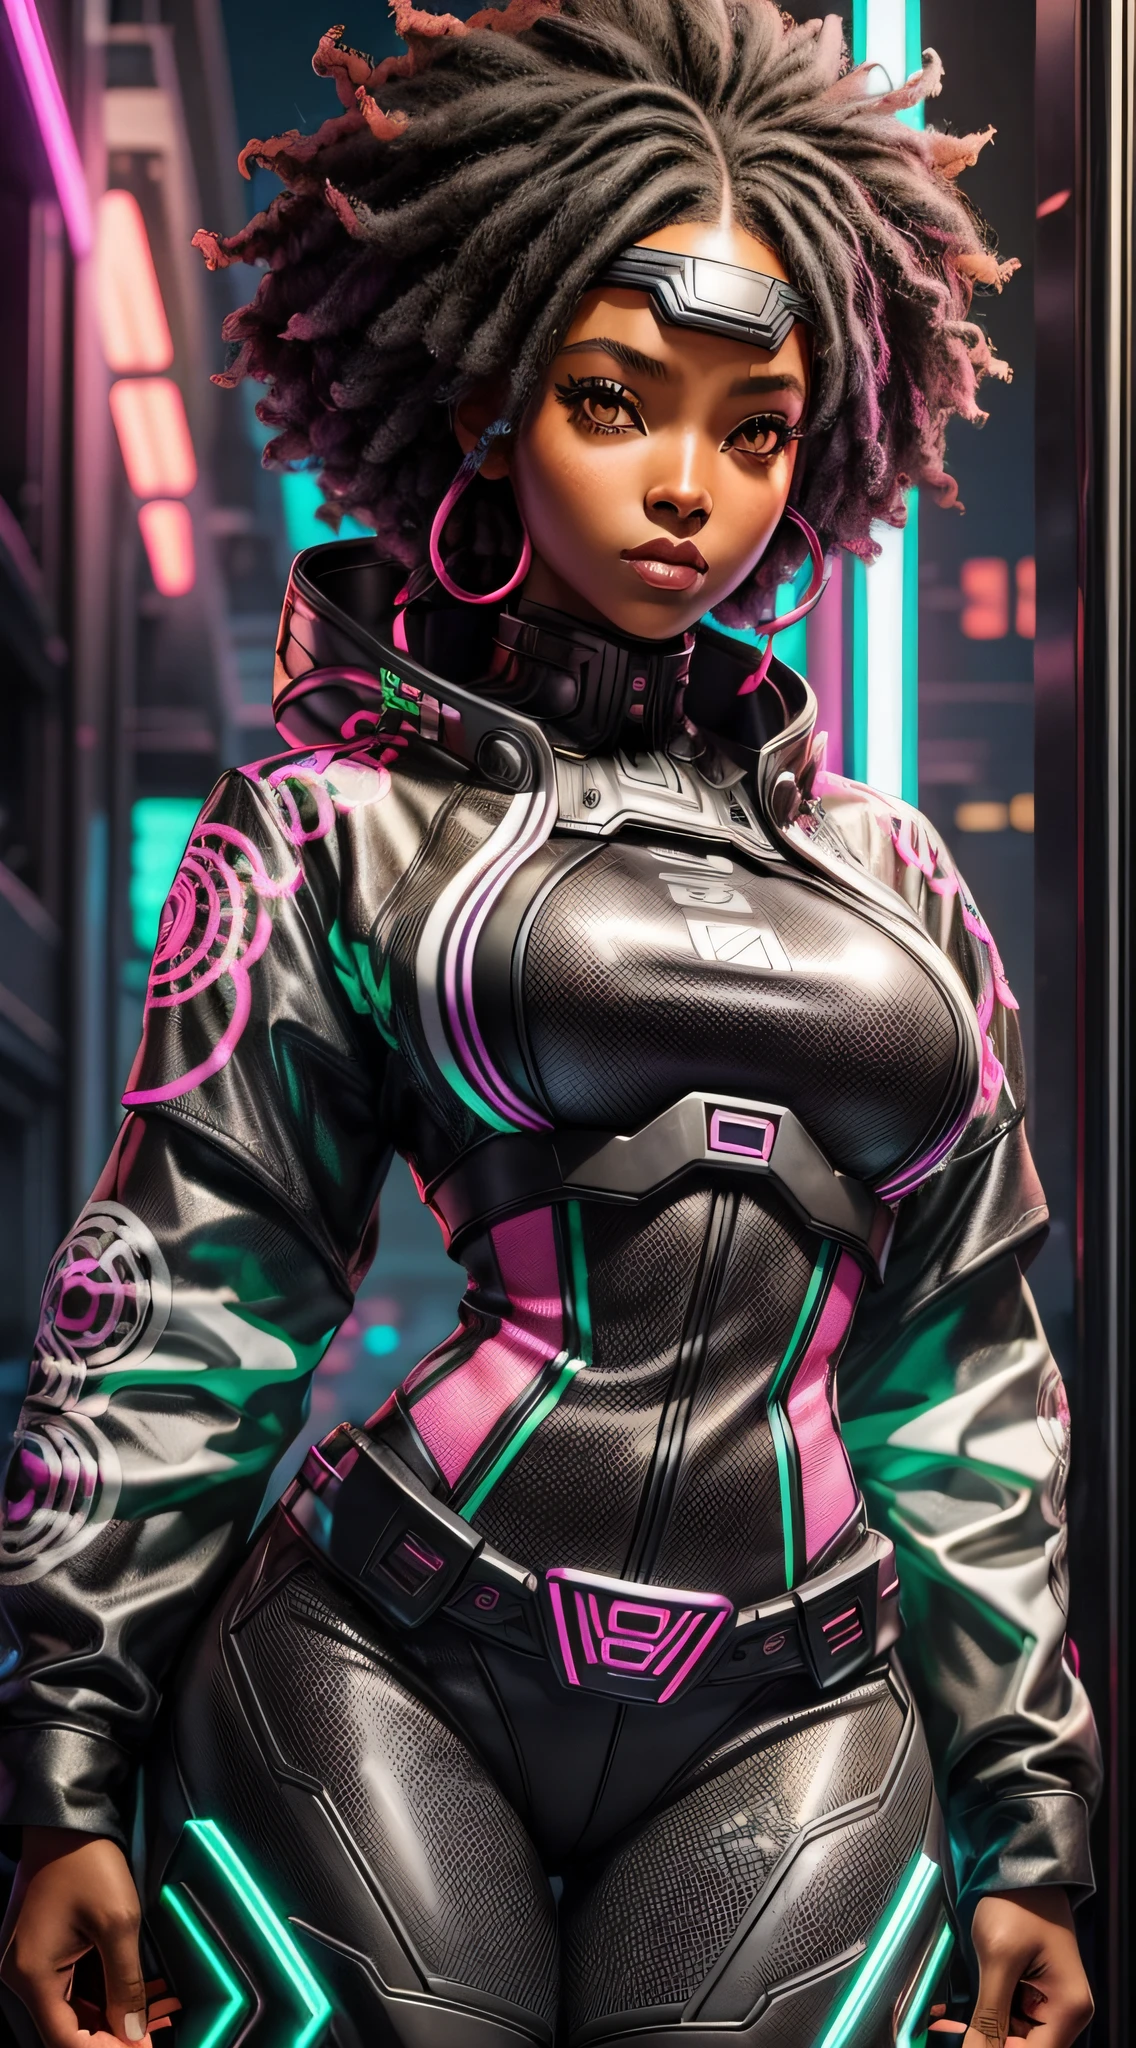 "Schöne schwarze Frau, ausgelassen und in hochwertiger Afrosamurai Techwear-Kleidung gekleidet, in einem futuristischen und coolen Setting, mit Neonlichtern und kontrastierenden Schatten."